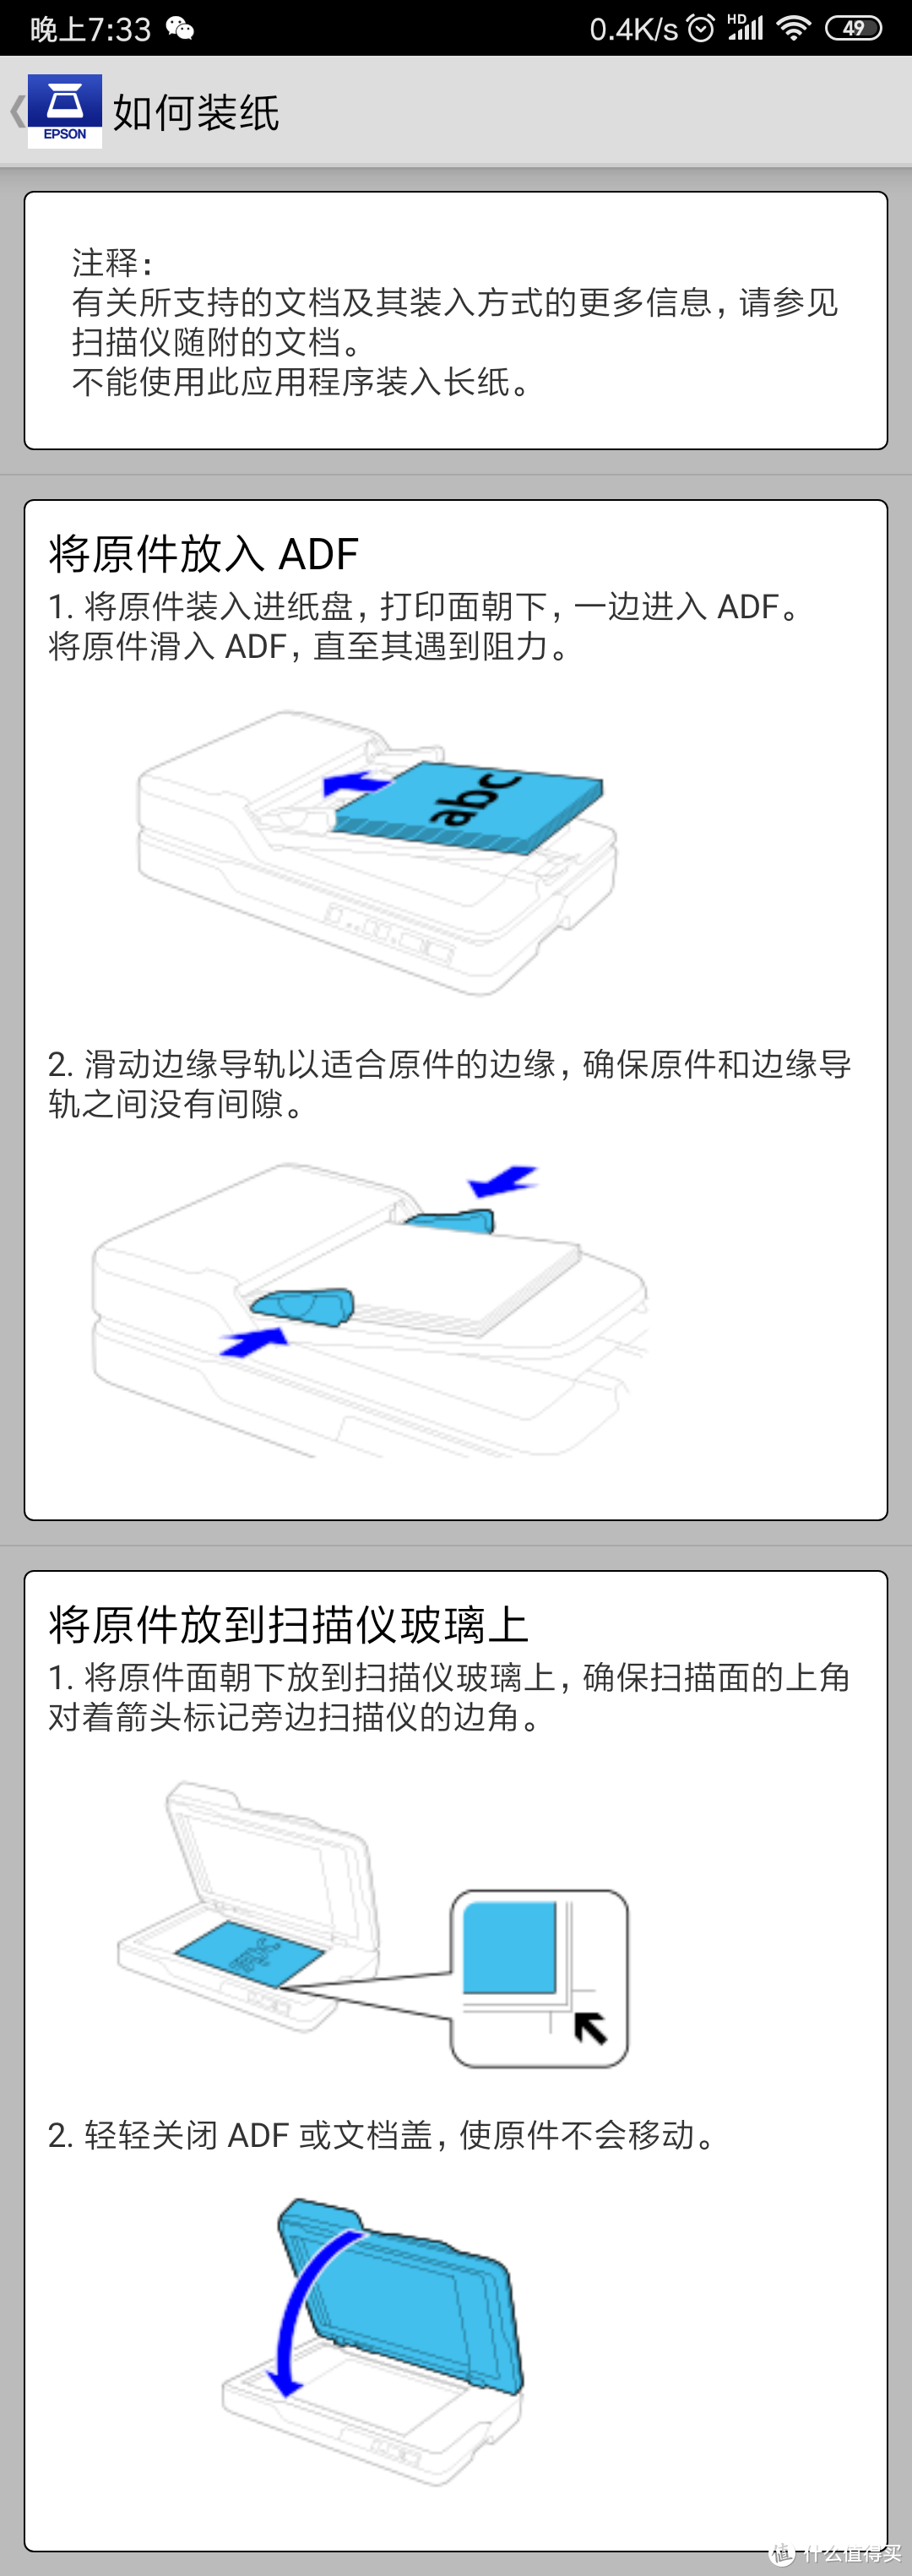 办公好帮手——爱普生 DS-1660W ADF+平板 高速彩色文档扫描仪